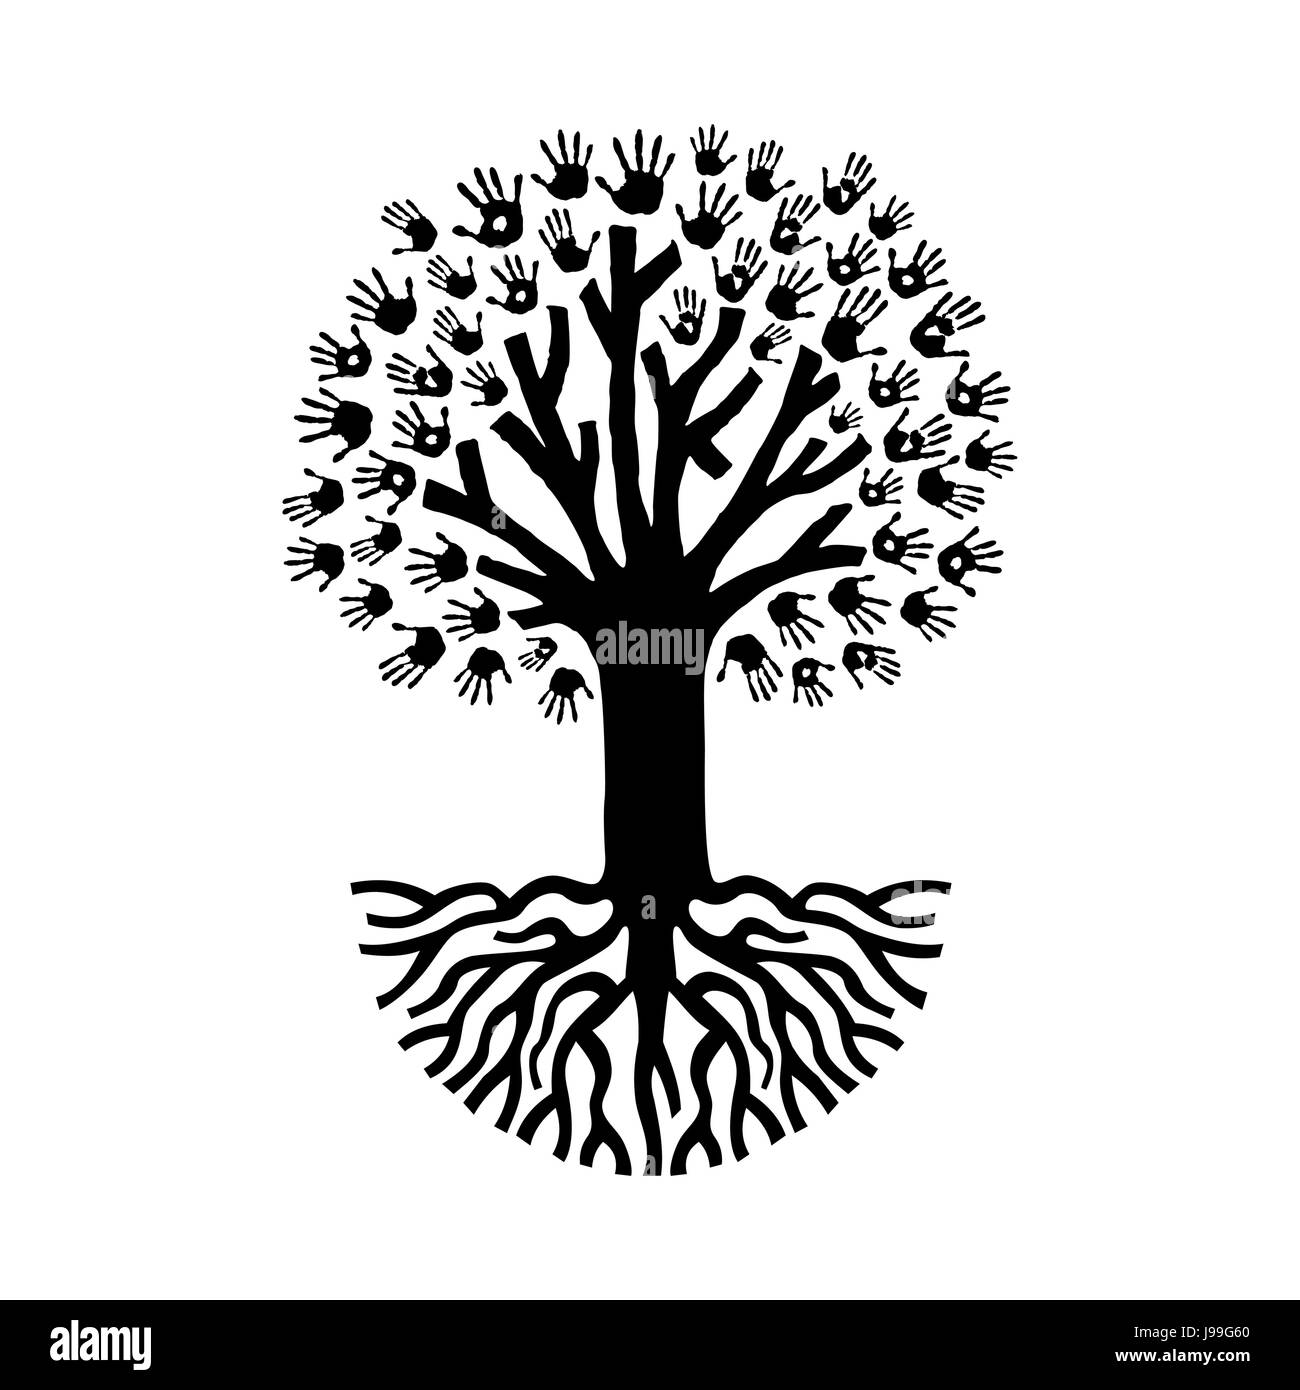 Par contre divers imprime arbre isolé sur fond blanc avec de grosses racines. L'aide communautaire et d'équipe concept illustration. Vecteur EPS10. Illustration de Vecteur